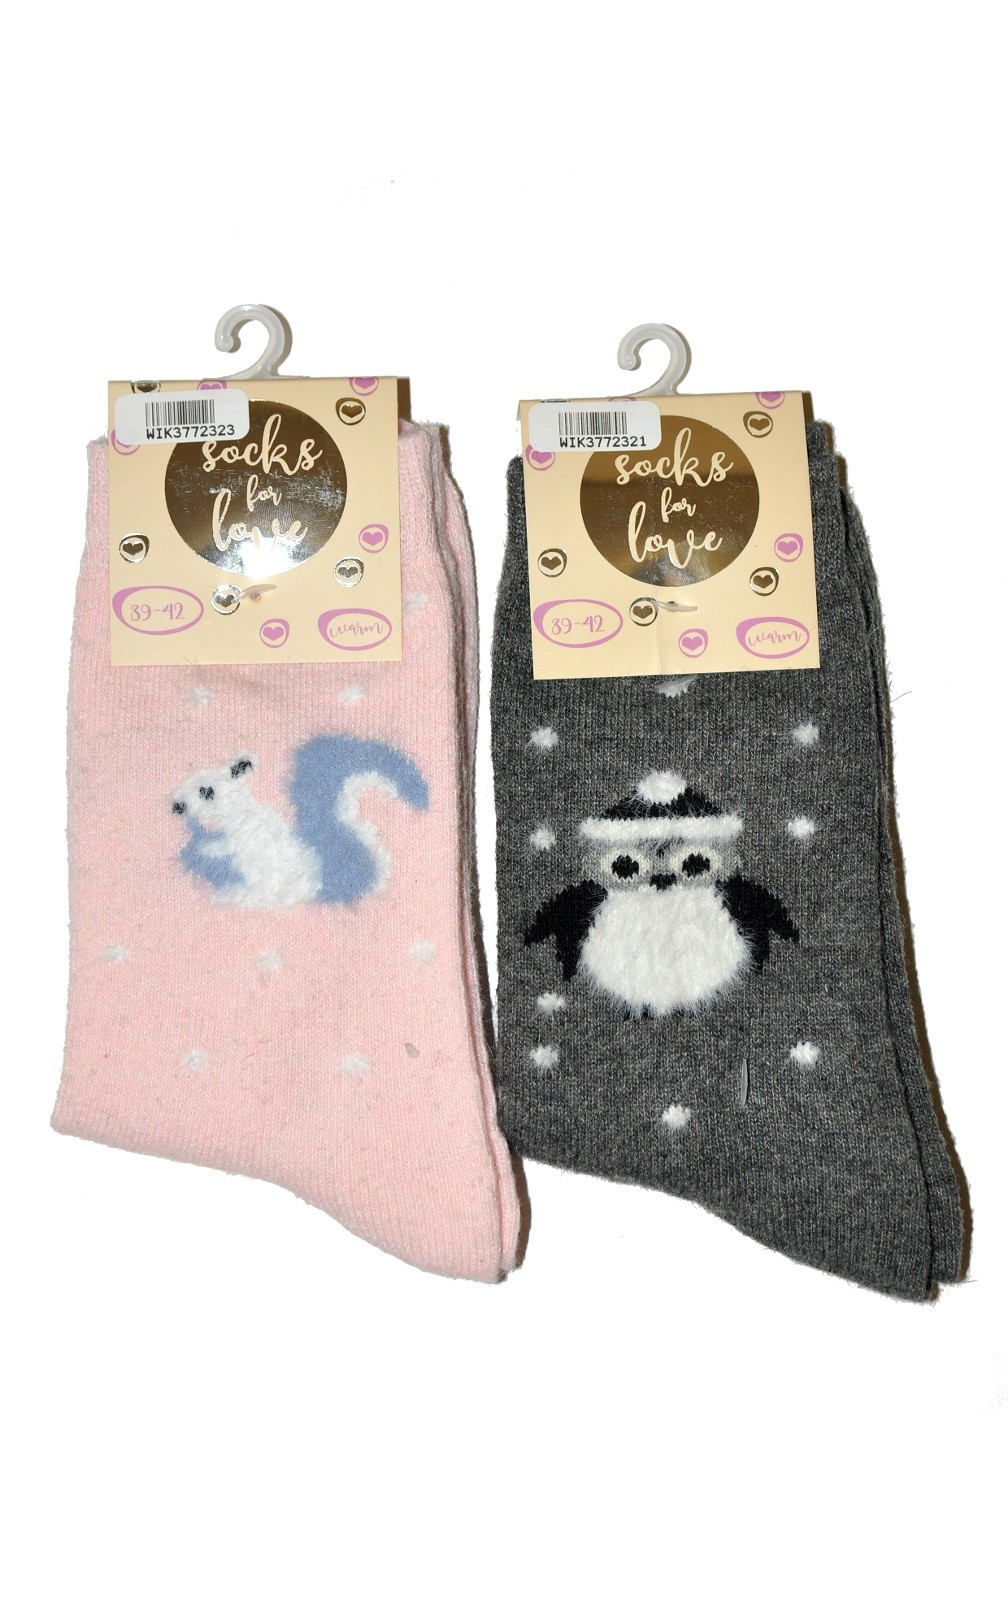 Dámské ponožky WiK 37723 Socks For Love grafit 35-38